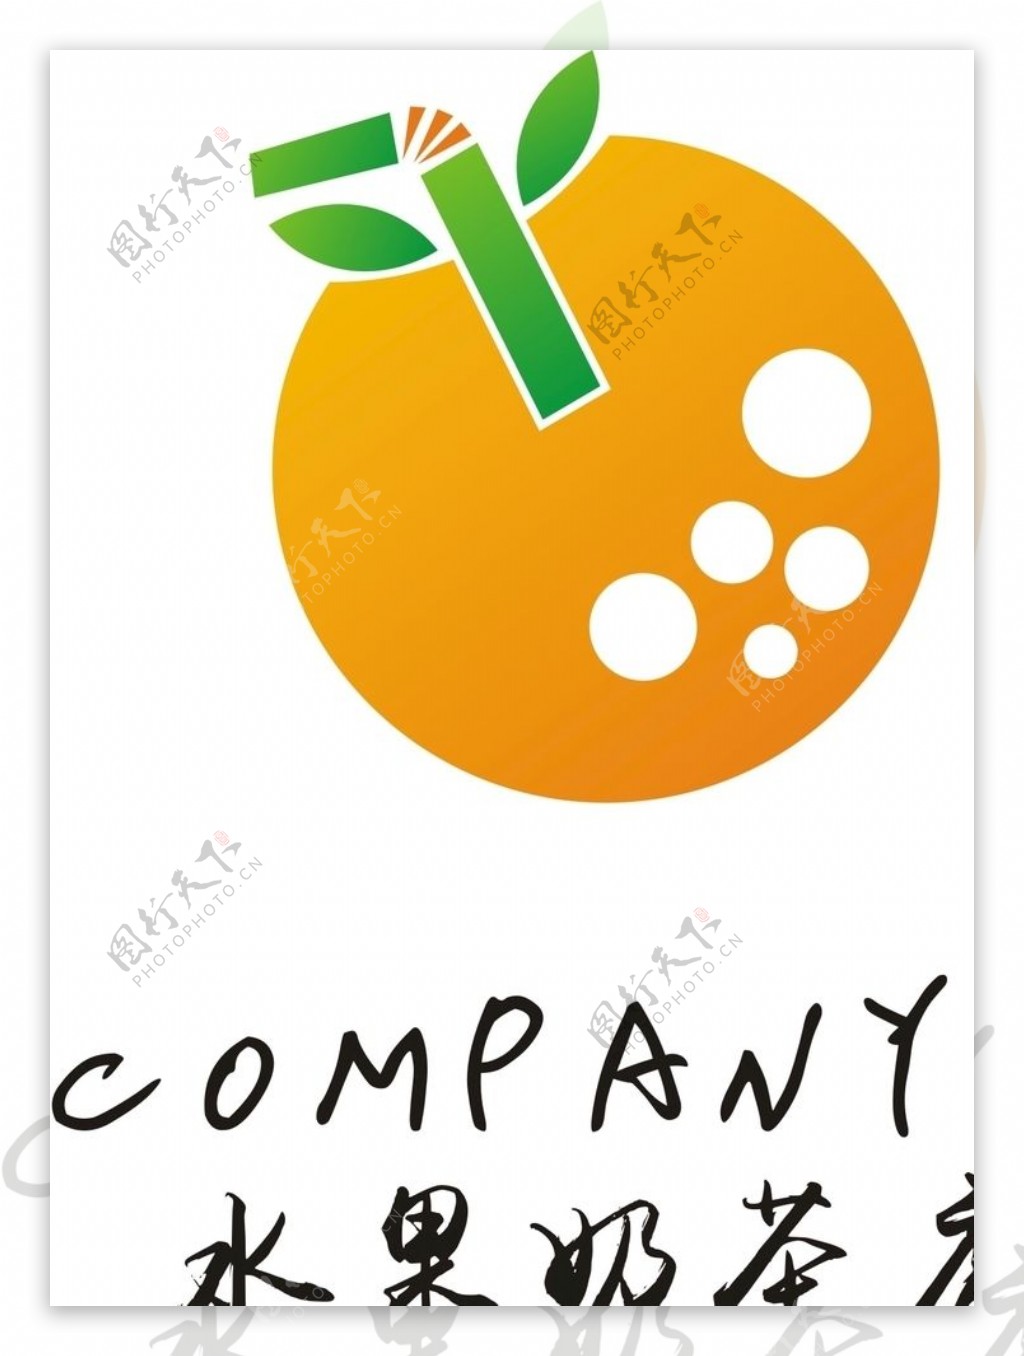 水果奶茶店logo